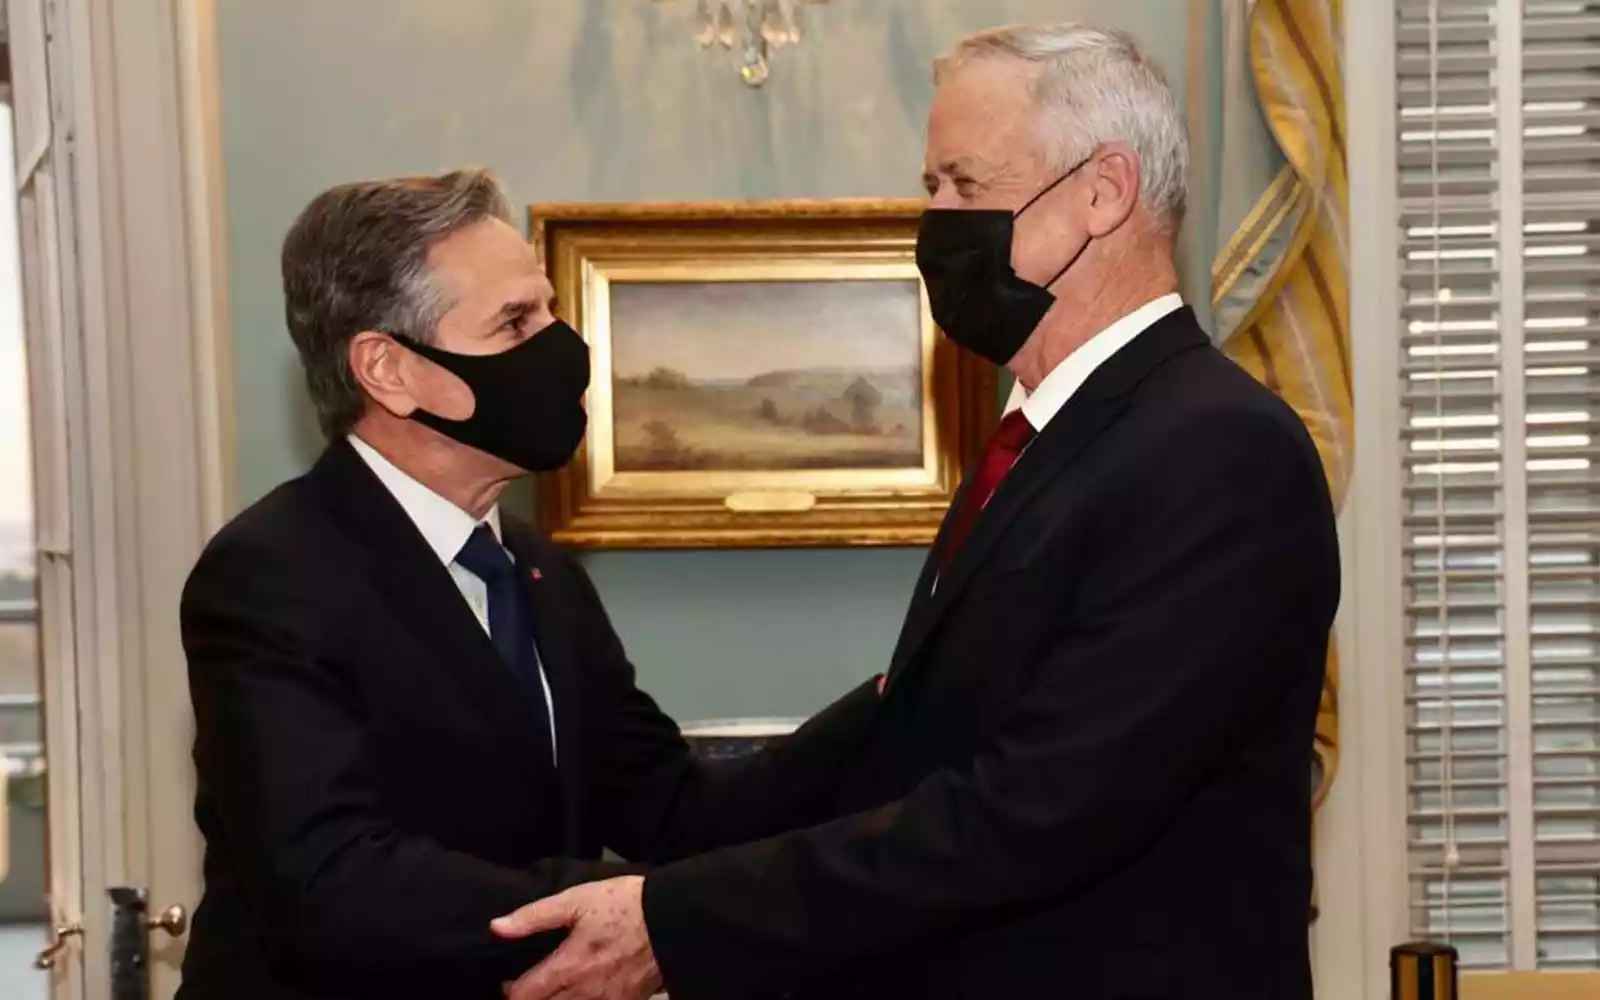 El secretario de Estado estadounidense Antony Blinken (izquierda) se reúne con el ministro de Defensa Benny Gantz (derecha) en Washington, DC, el 9 de diciembre de 2021. (Shmulik Almany/GPO)